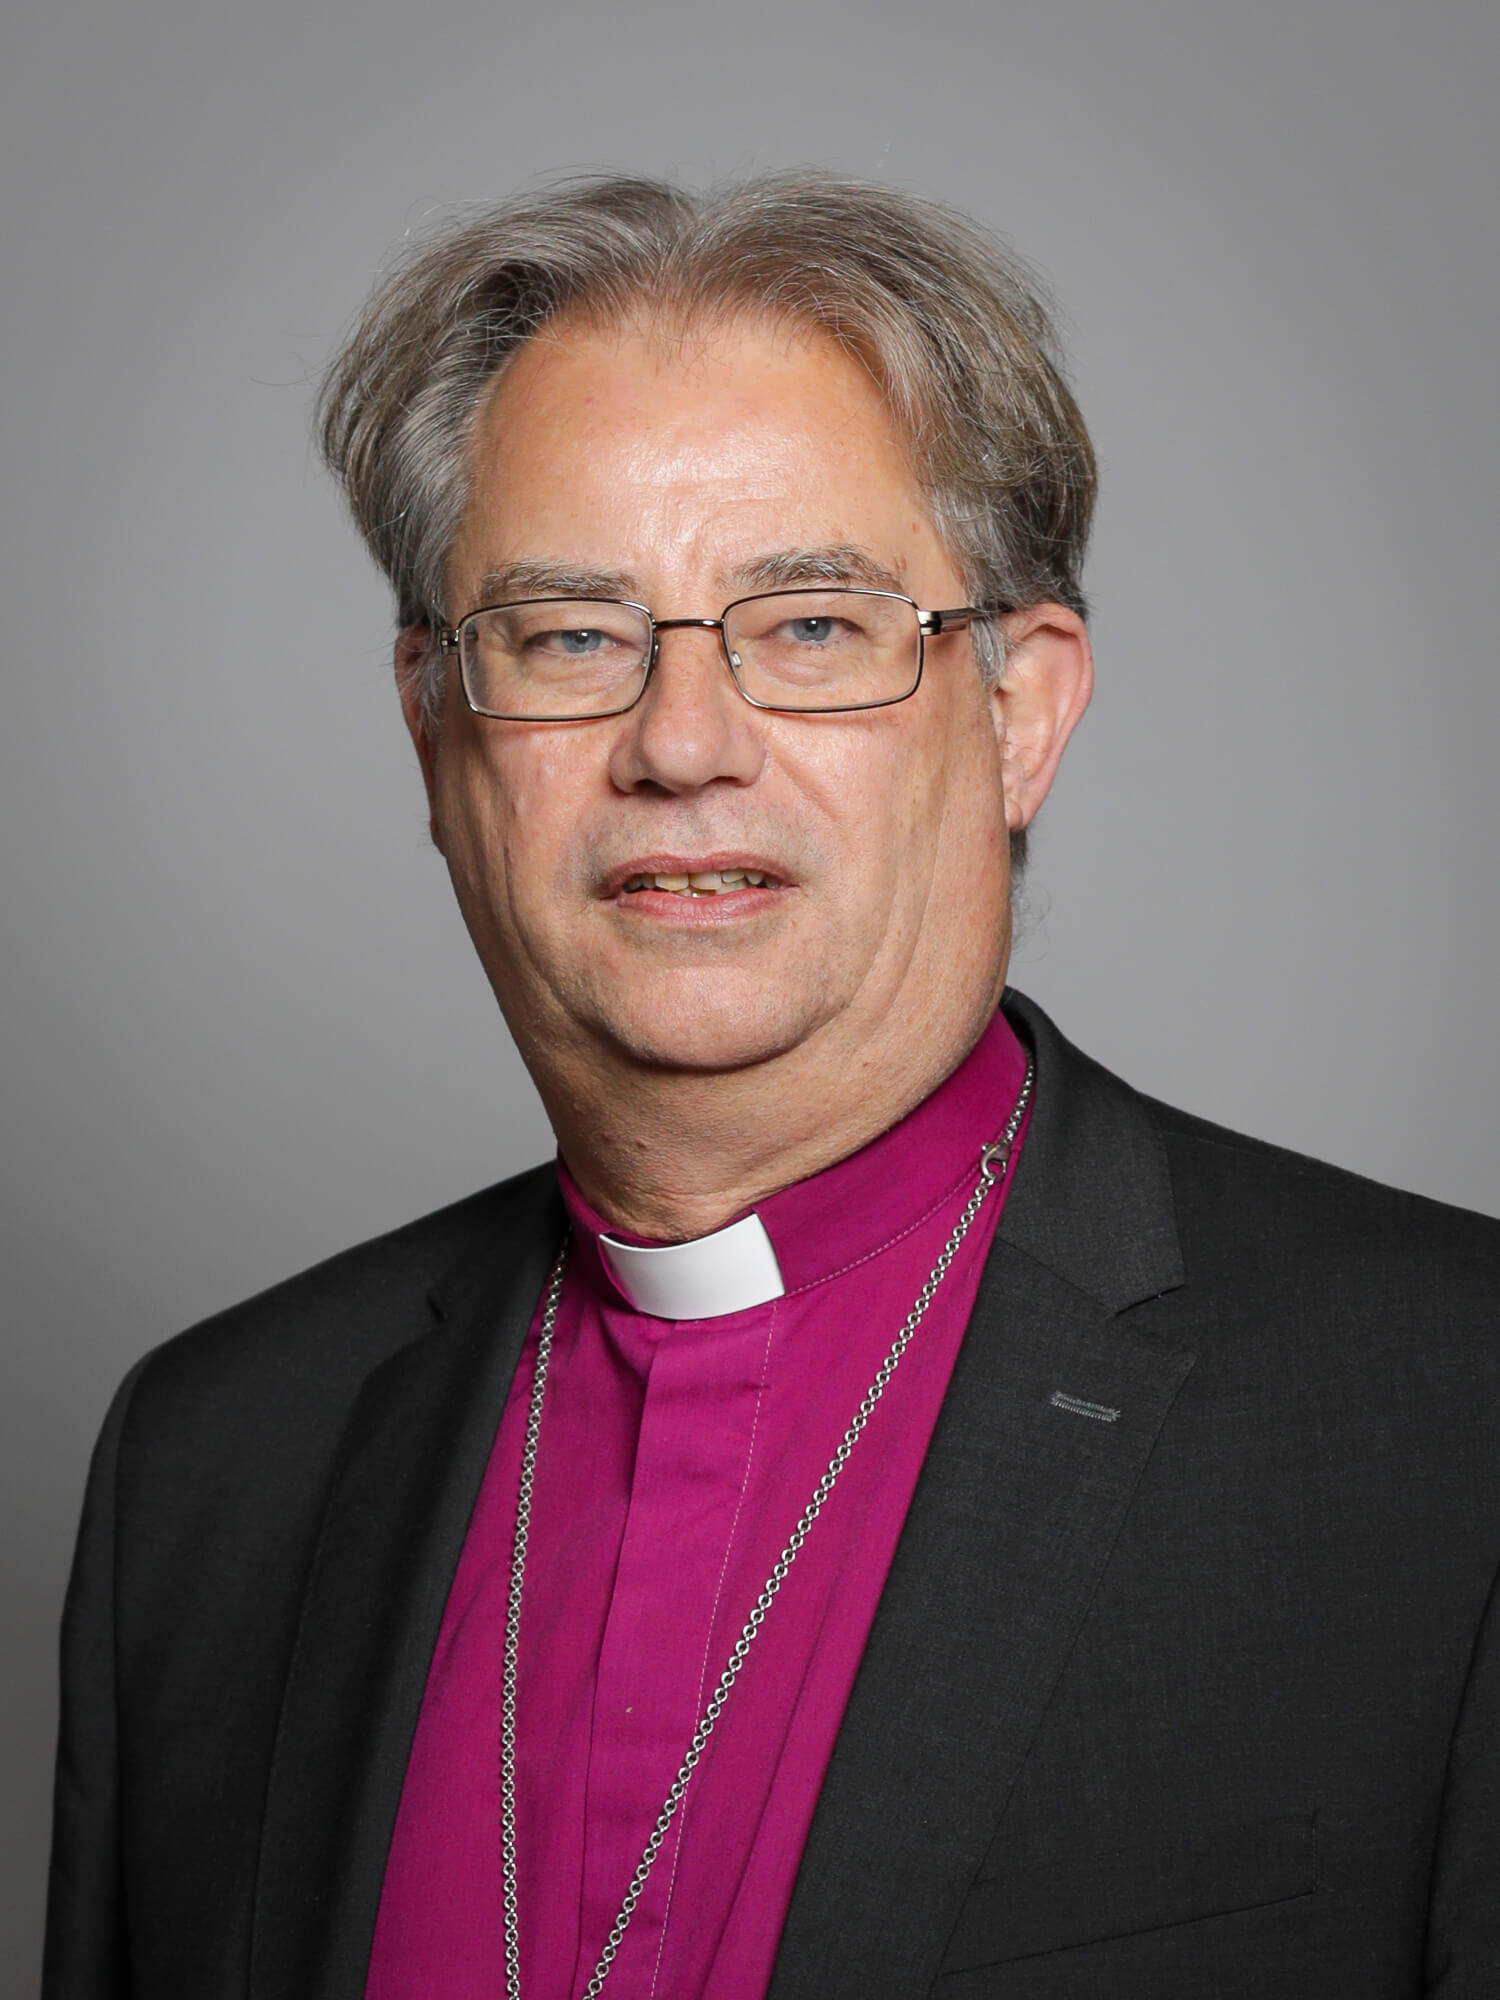 Steven Croft, secondo il vescovo di Oxford la Chiesa dovrebbe sposare le coppie gay - Steven Croft foto - Gay.it